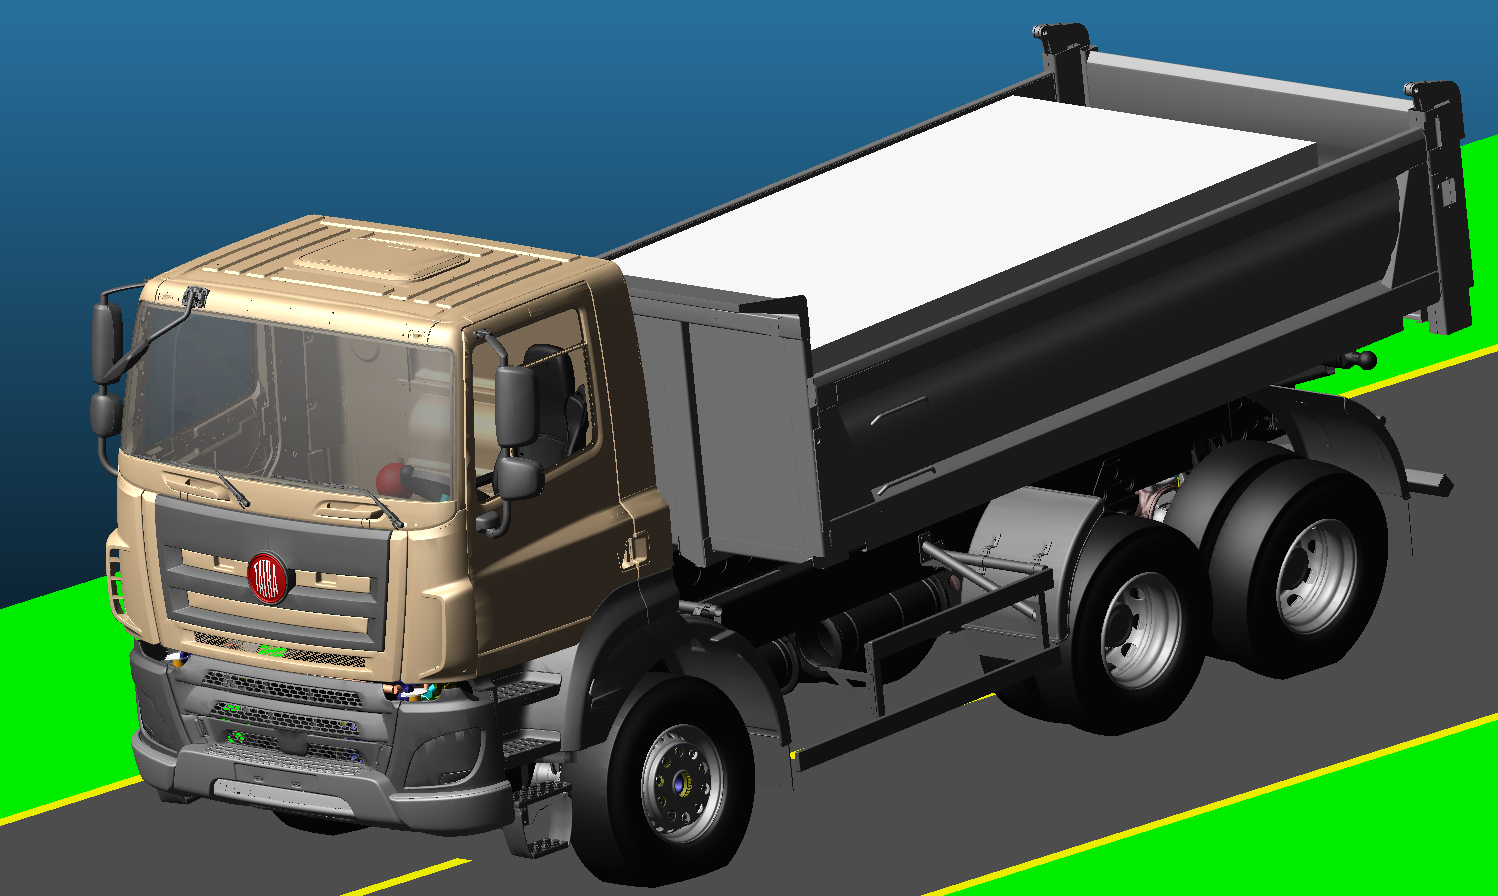 Pomocí simulací brzdění se ověřuje, zda nákladní vozidla splňují požadavky a homologace pro prázdná a naložená vozidla.